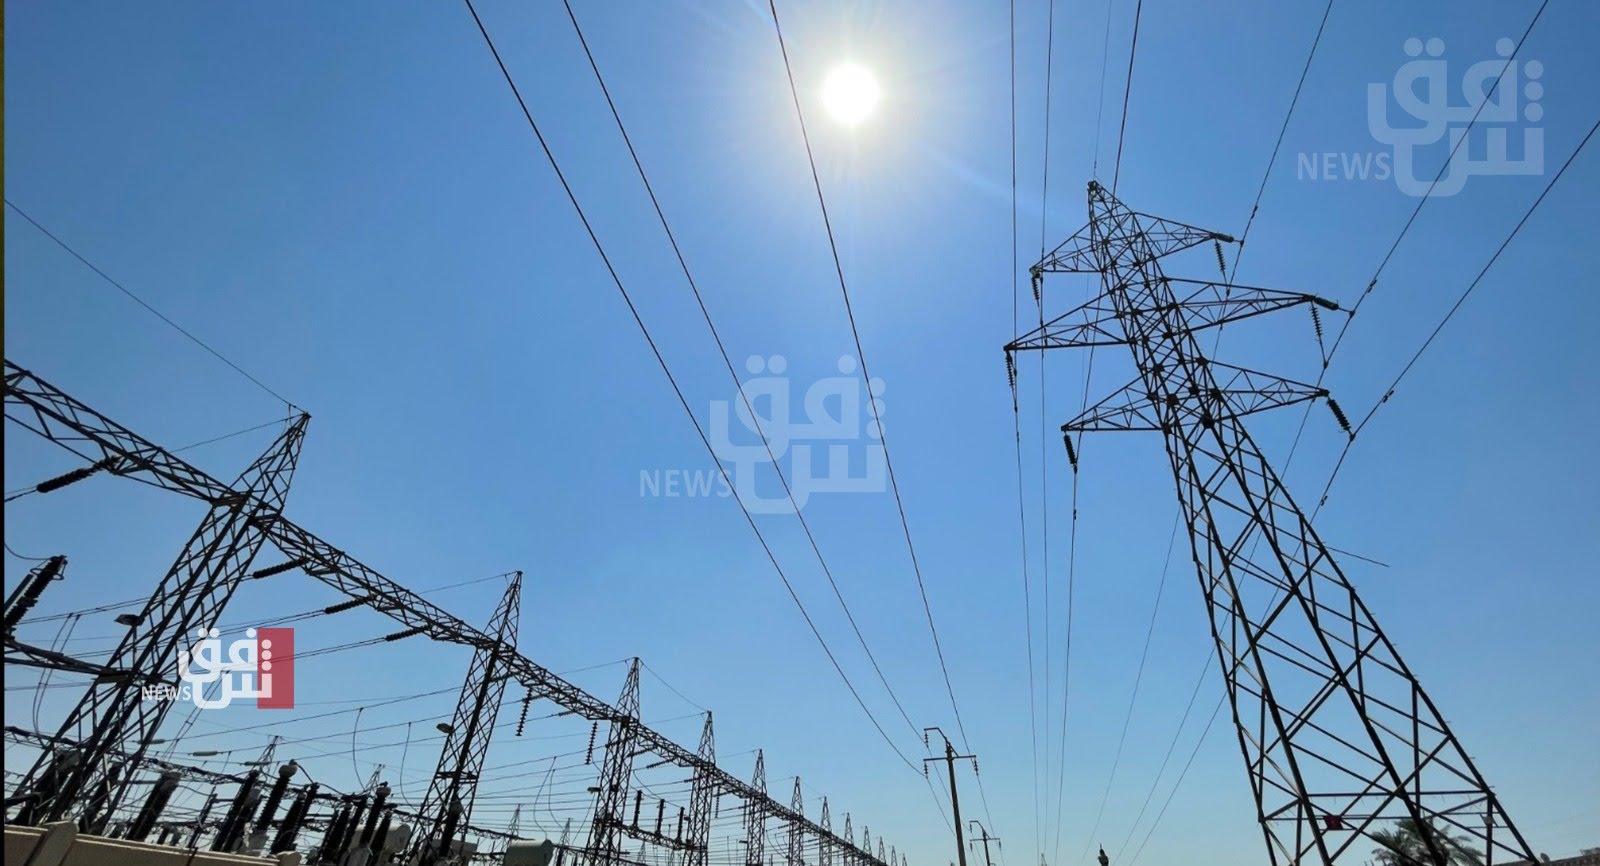 بعد انقطاع لساعات طويلة.. الكهرباء العراقية تعلن "تحسناً تدريجياً" بالأحمال والإنتاج